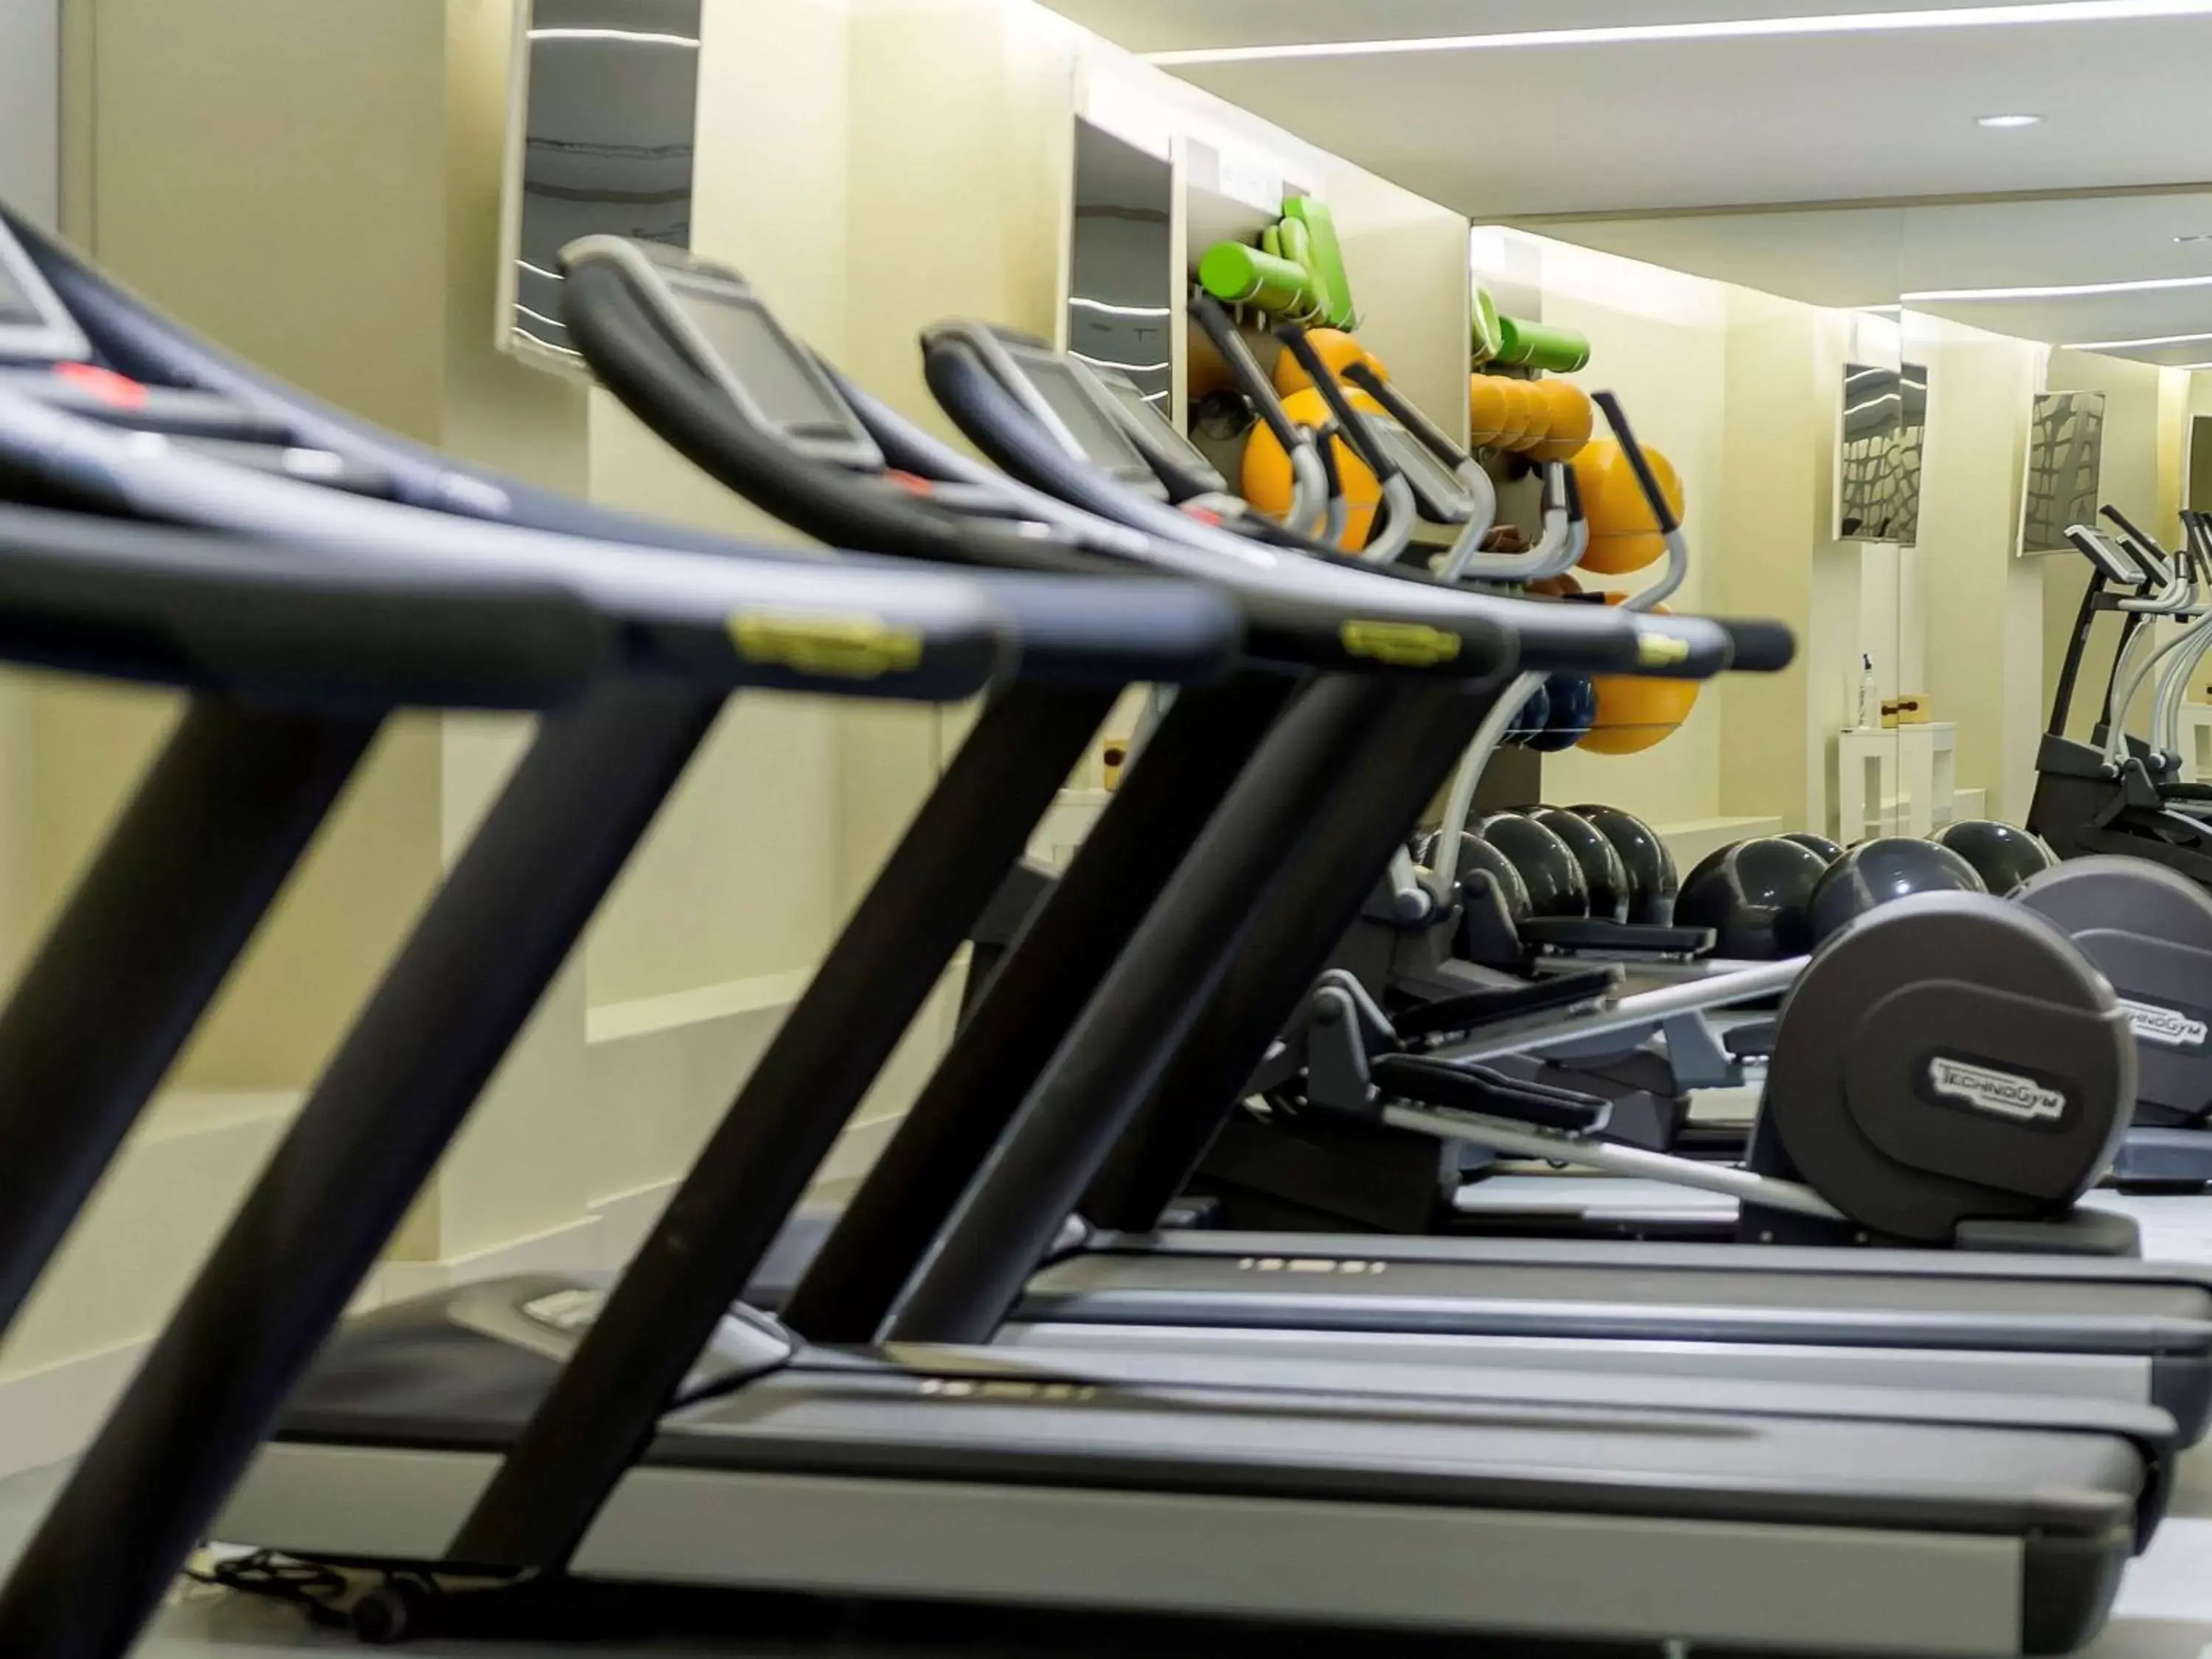 Fitness centre/facilities, Fitness Center/Facilities in Fairmont Rio de Janeiro Copacabana